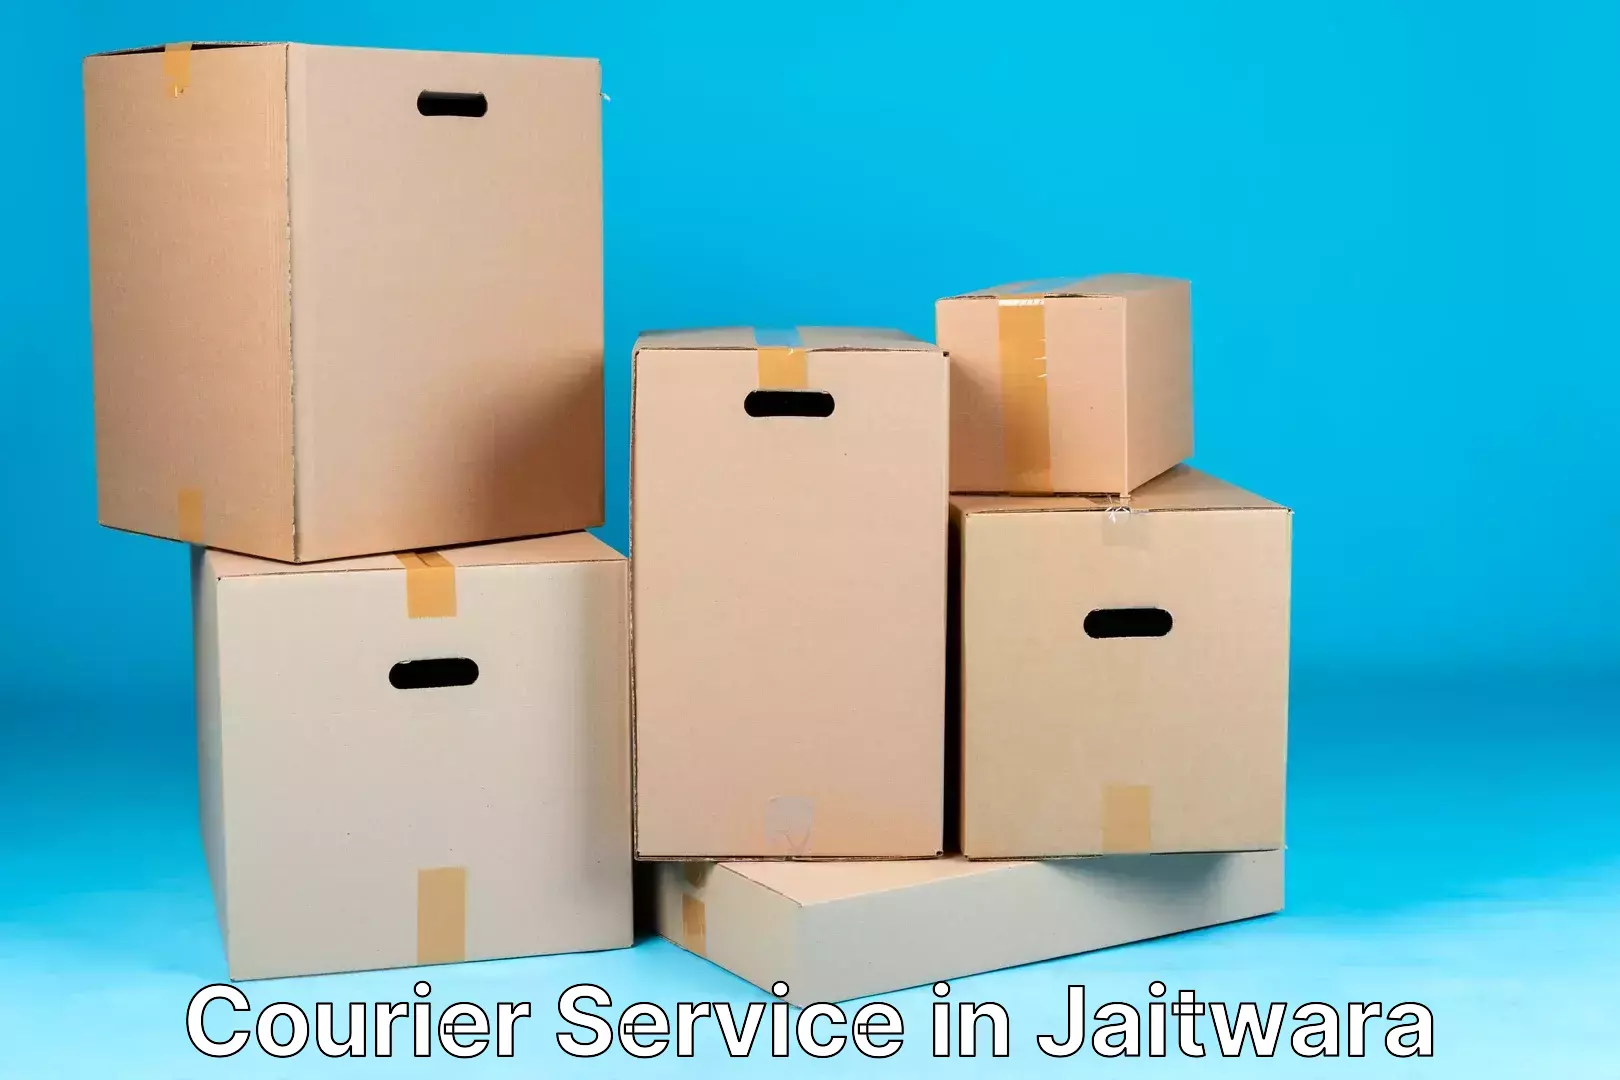 Quick dispatch service in Jaitwara